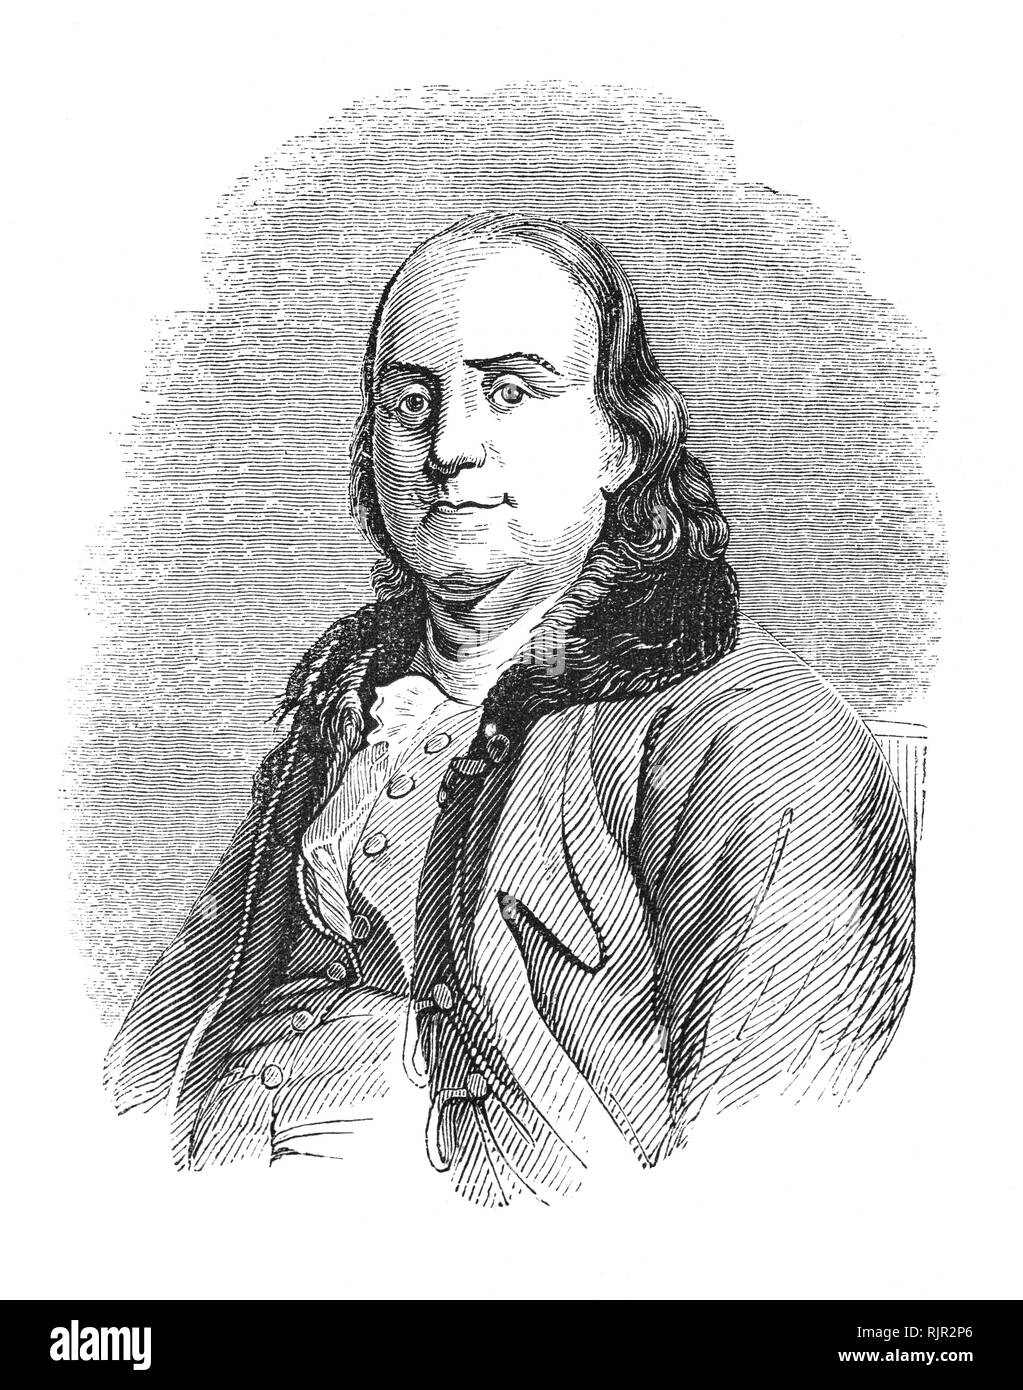 Ein Portrait von Benjamin Franklin (1706-1790), ein amerikanischer Universalgelehrten und einer der Gründerväter der Vereinigten Staaten. Franklin war ein führender Autor, Drucker, politische Theoretiker, Politiker, Freimaurer, postmaster, Wissenschaftler, Erfinder, Humorist, Civic Aktivist, Staatsmann und Diplomat. Als Wissenschaftler war er eine wichtige Figur in der amerikanischen Aufklärung und die Geschichte der Physik für seine Entdeckungen und Theorien in Bezug auf Elektrizität. Als Erfinder, die er für den Blitzableiter bekannt ist, Bifokal, und die Franklin Herd, unter anderem Erfindungen. Stockfoto